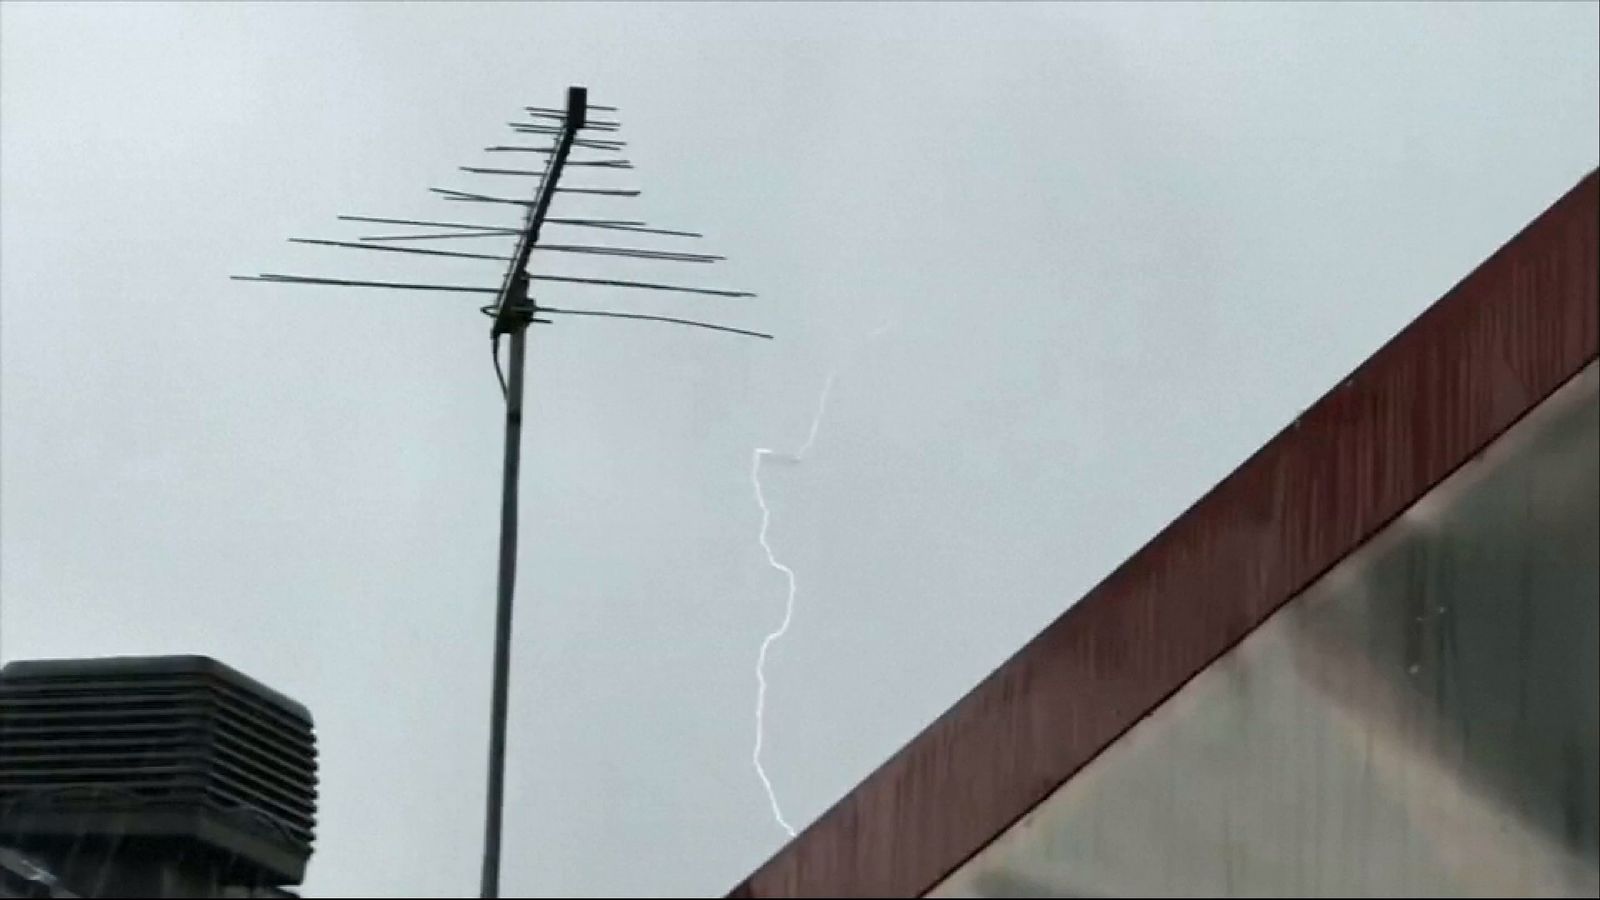 Lightning Appears To Strike Plane In Australia News Uk Video News Sky News